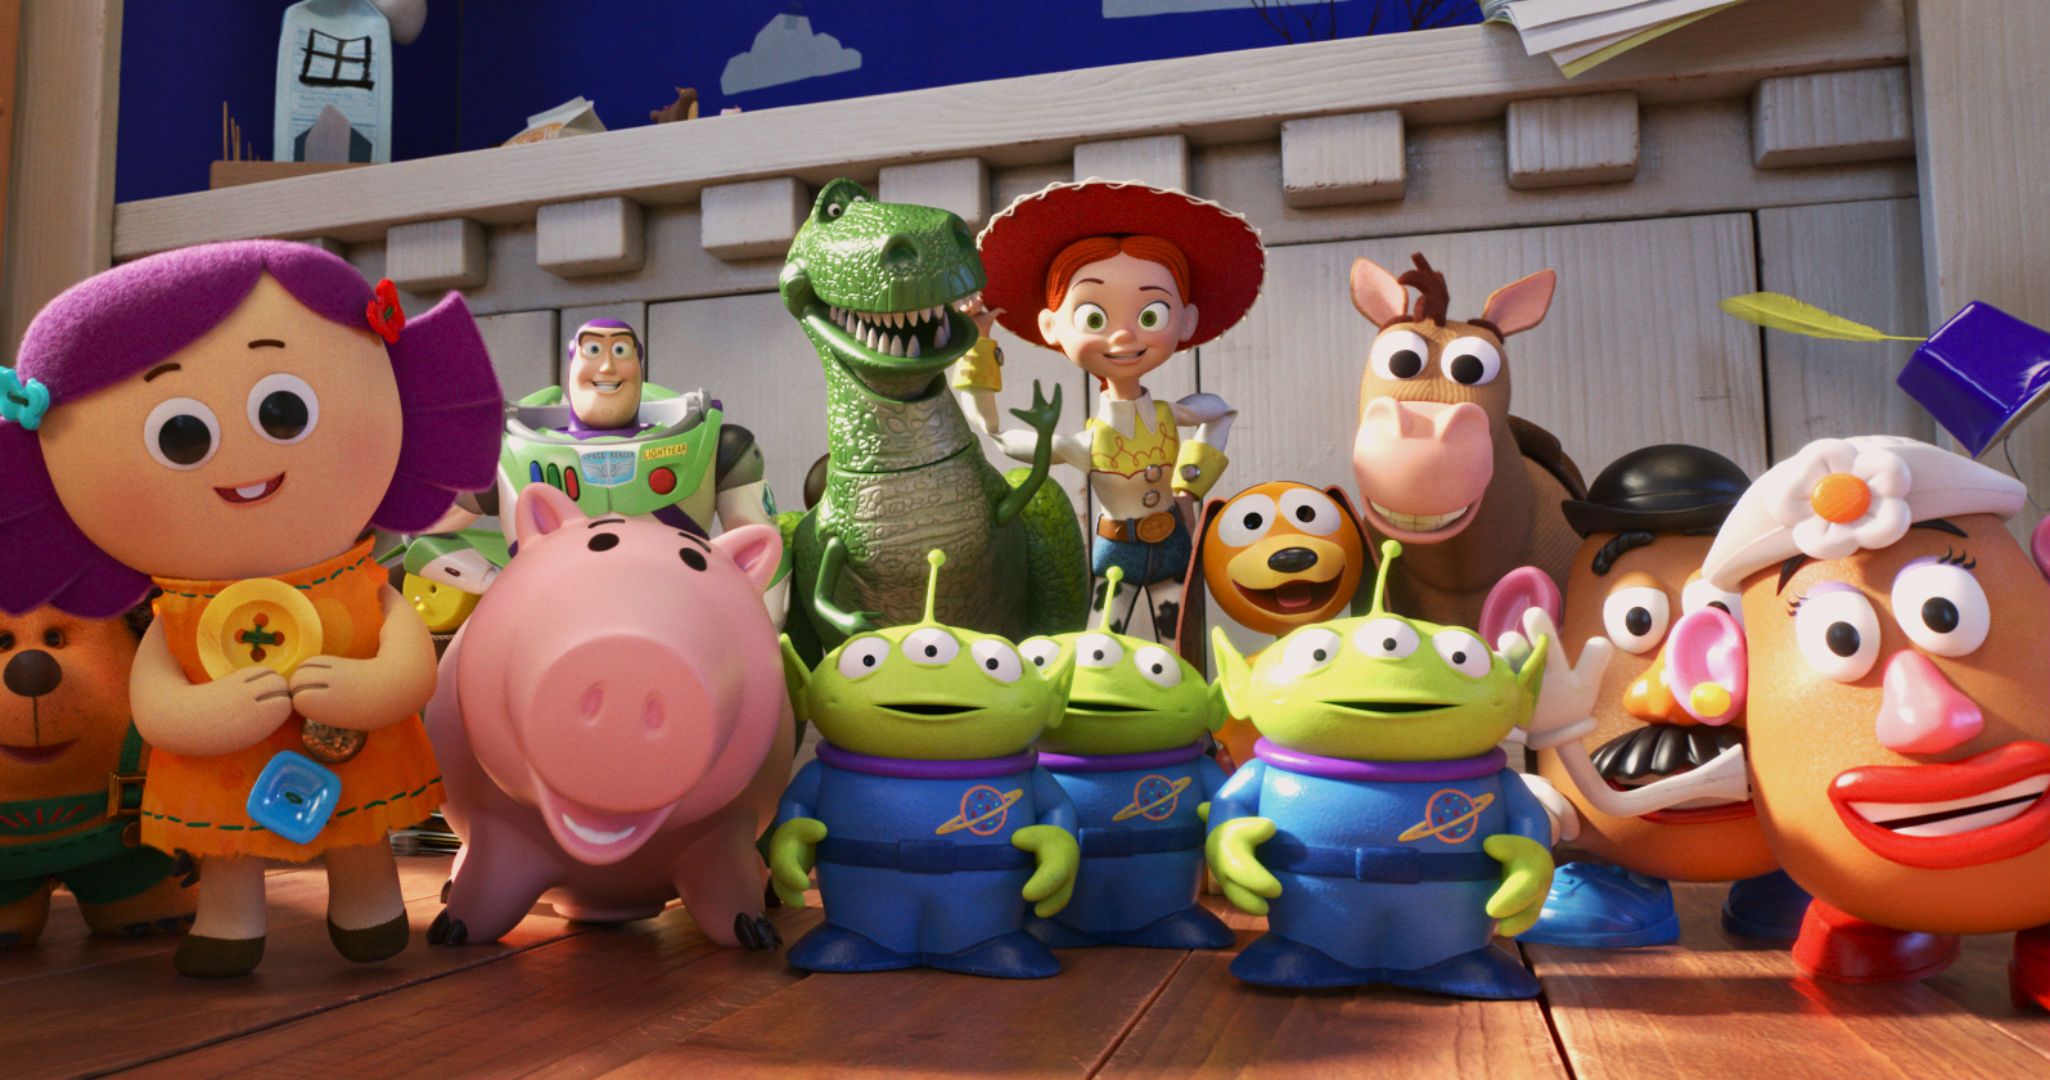 Las 25 películas de Pixar ordenadas de peor a mejor: de Toy Story